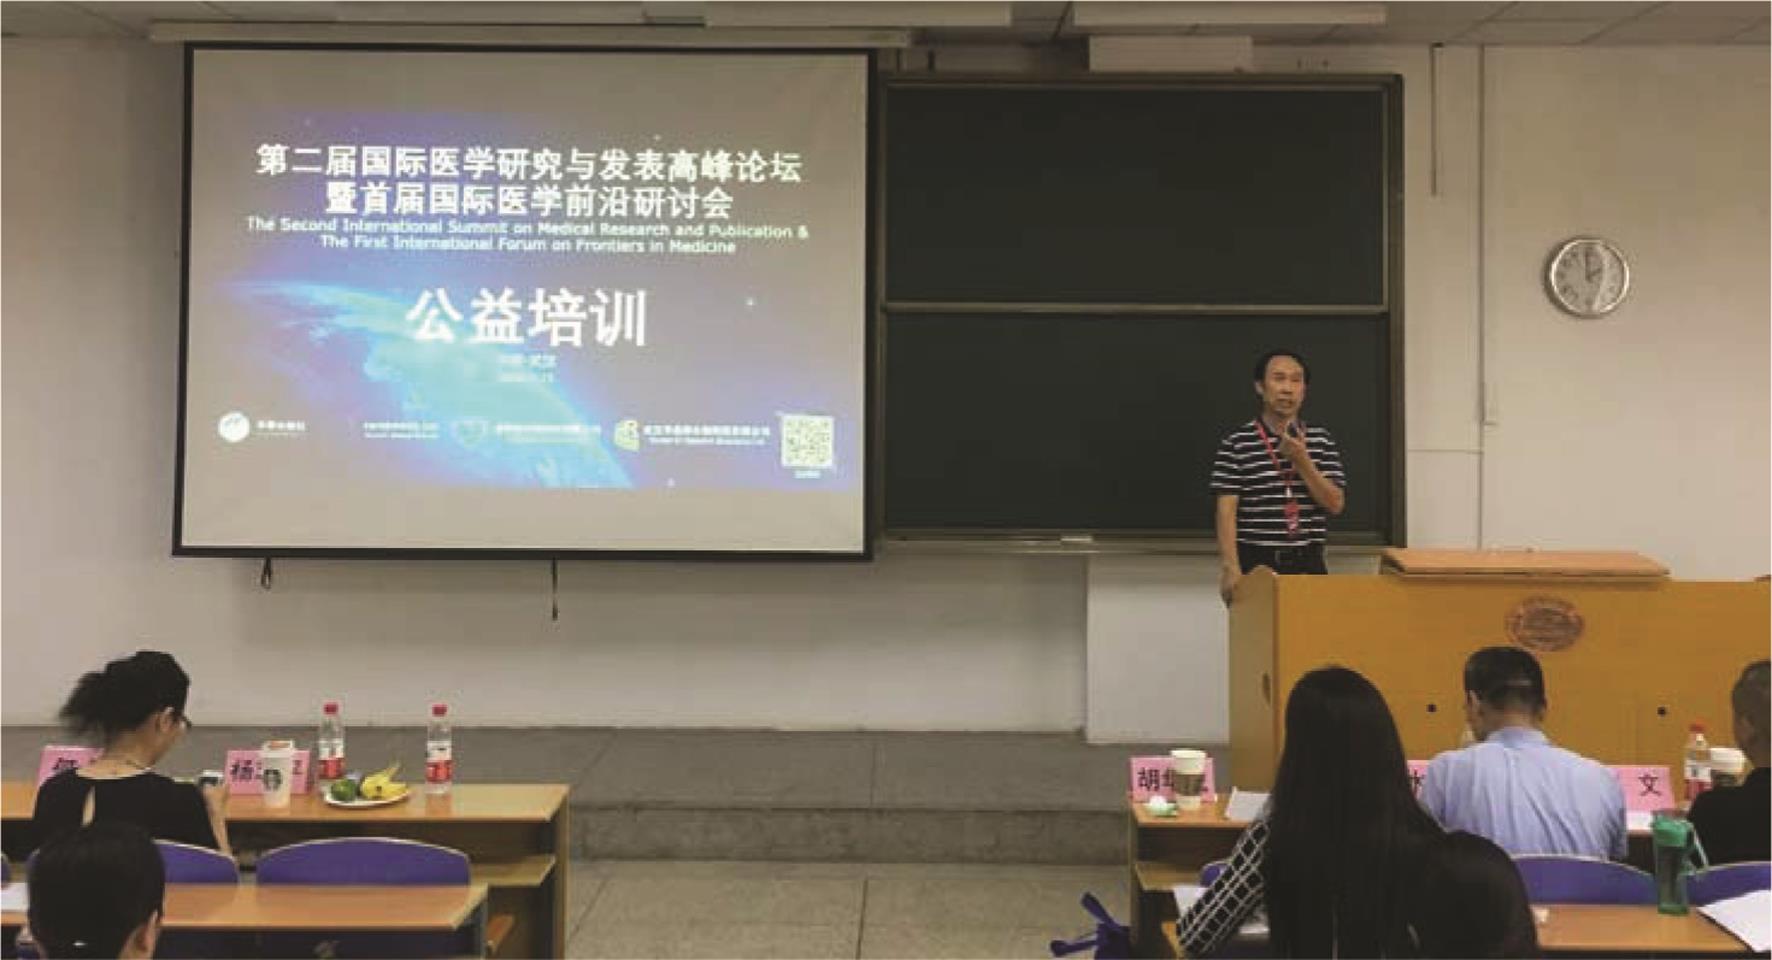 华中科技大学同济医学院胡华成副院长为本次培训致开幕辞。